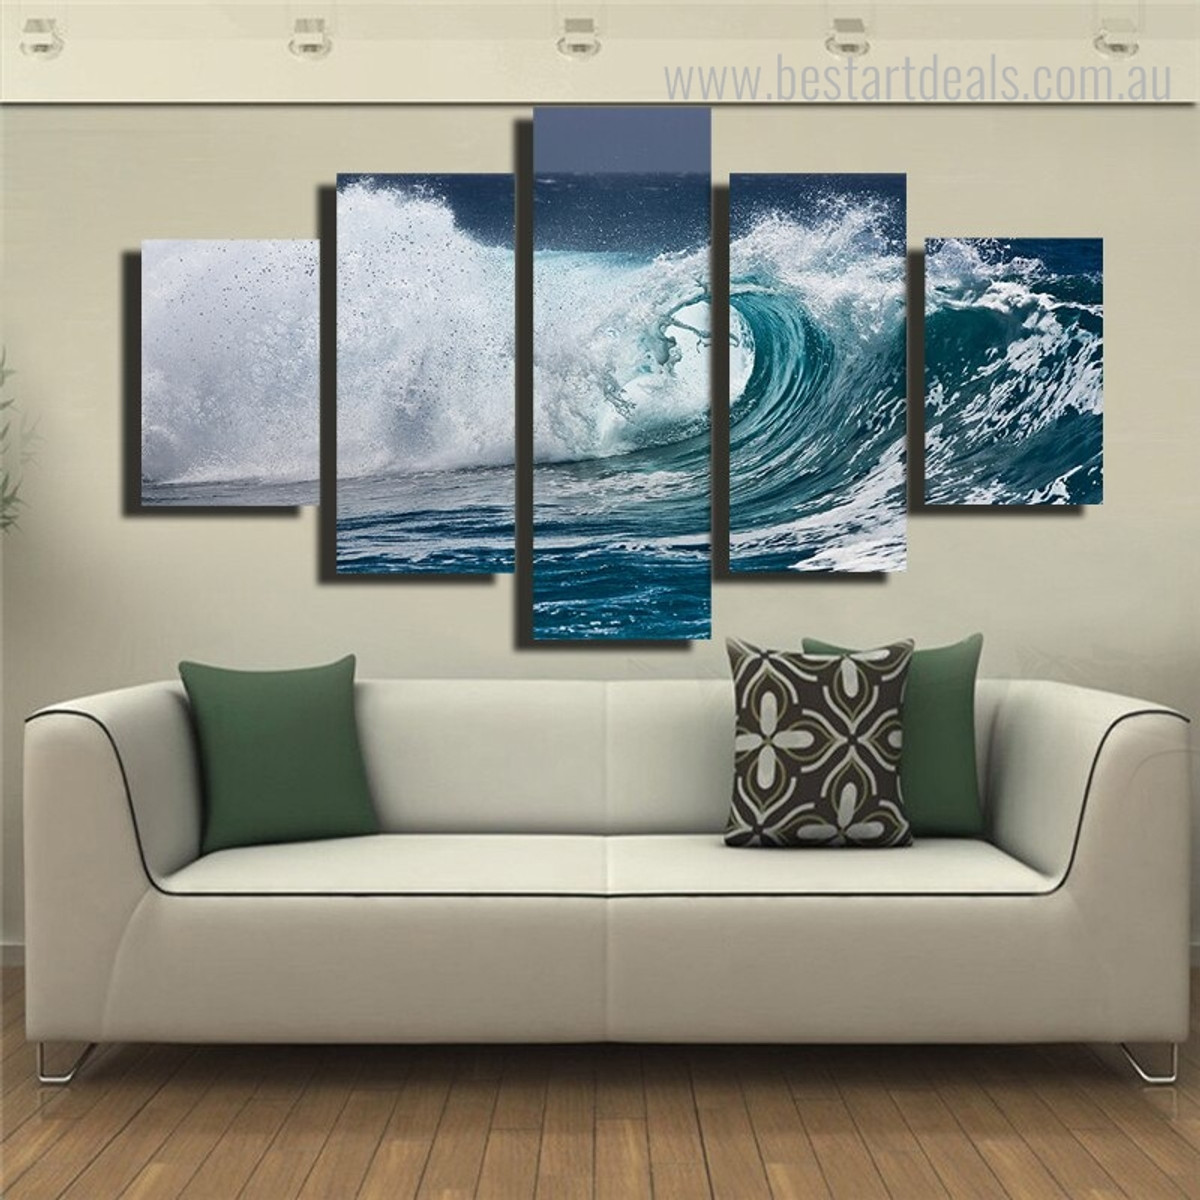 Storm Surge Seascape Landscape Framed Portmanteau Picture Canvas Print for Room Wall Ornamentation